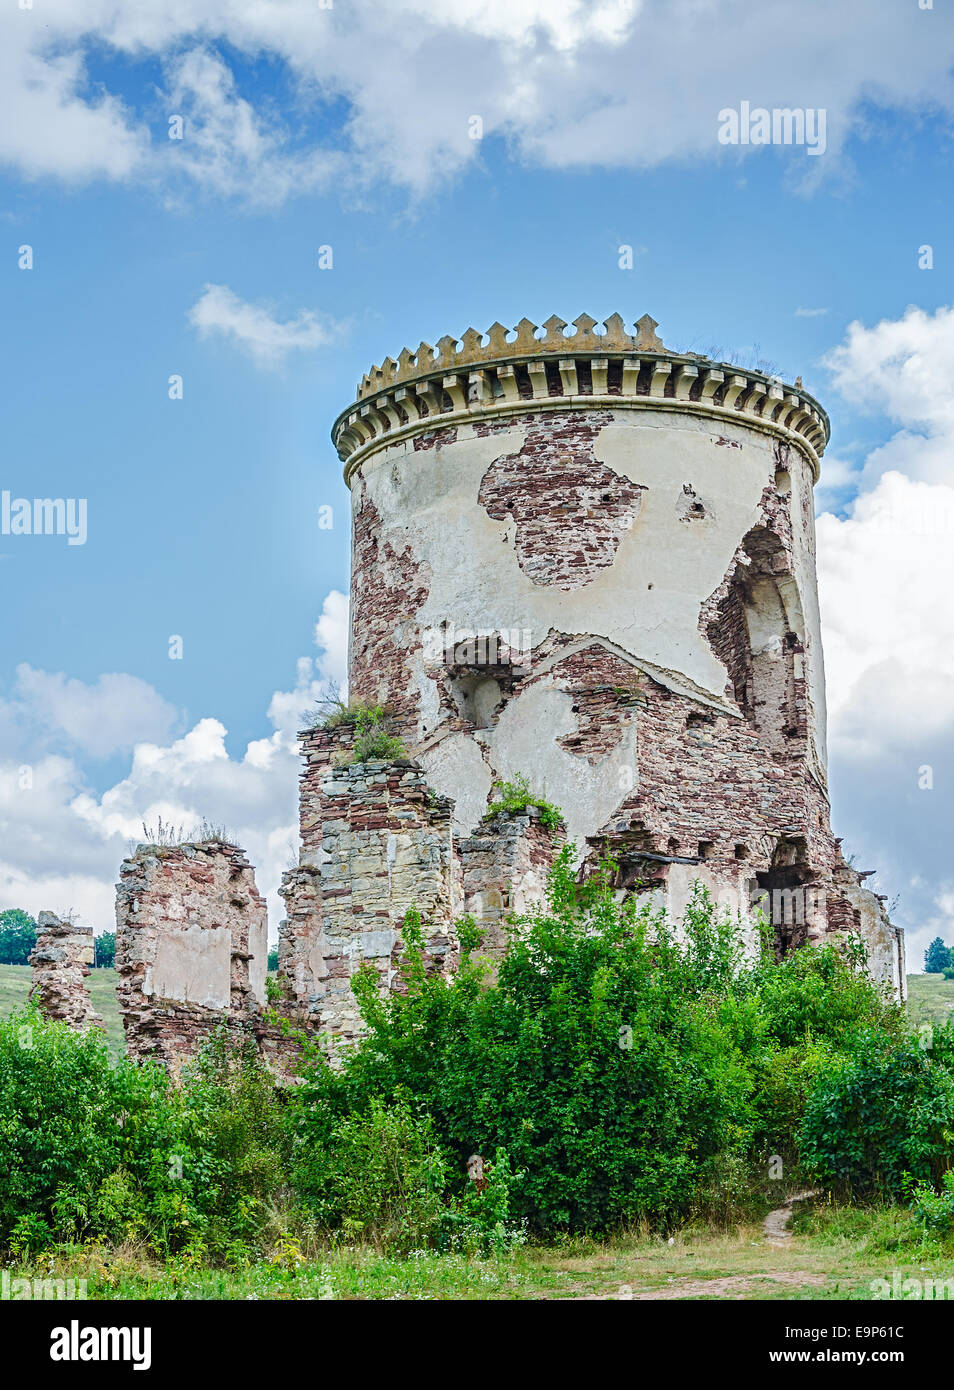 Rovine della vecchia torre medievale in Europa centrale Foto Stock